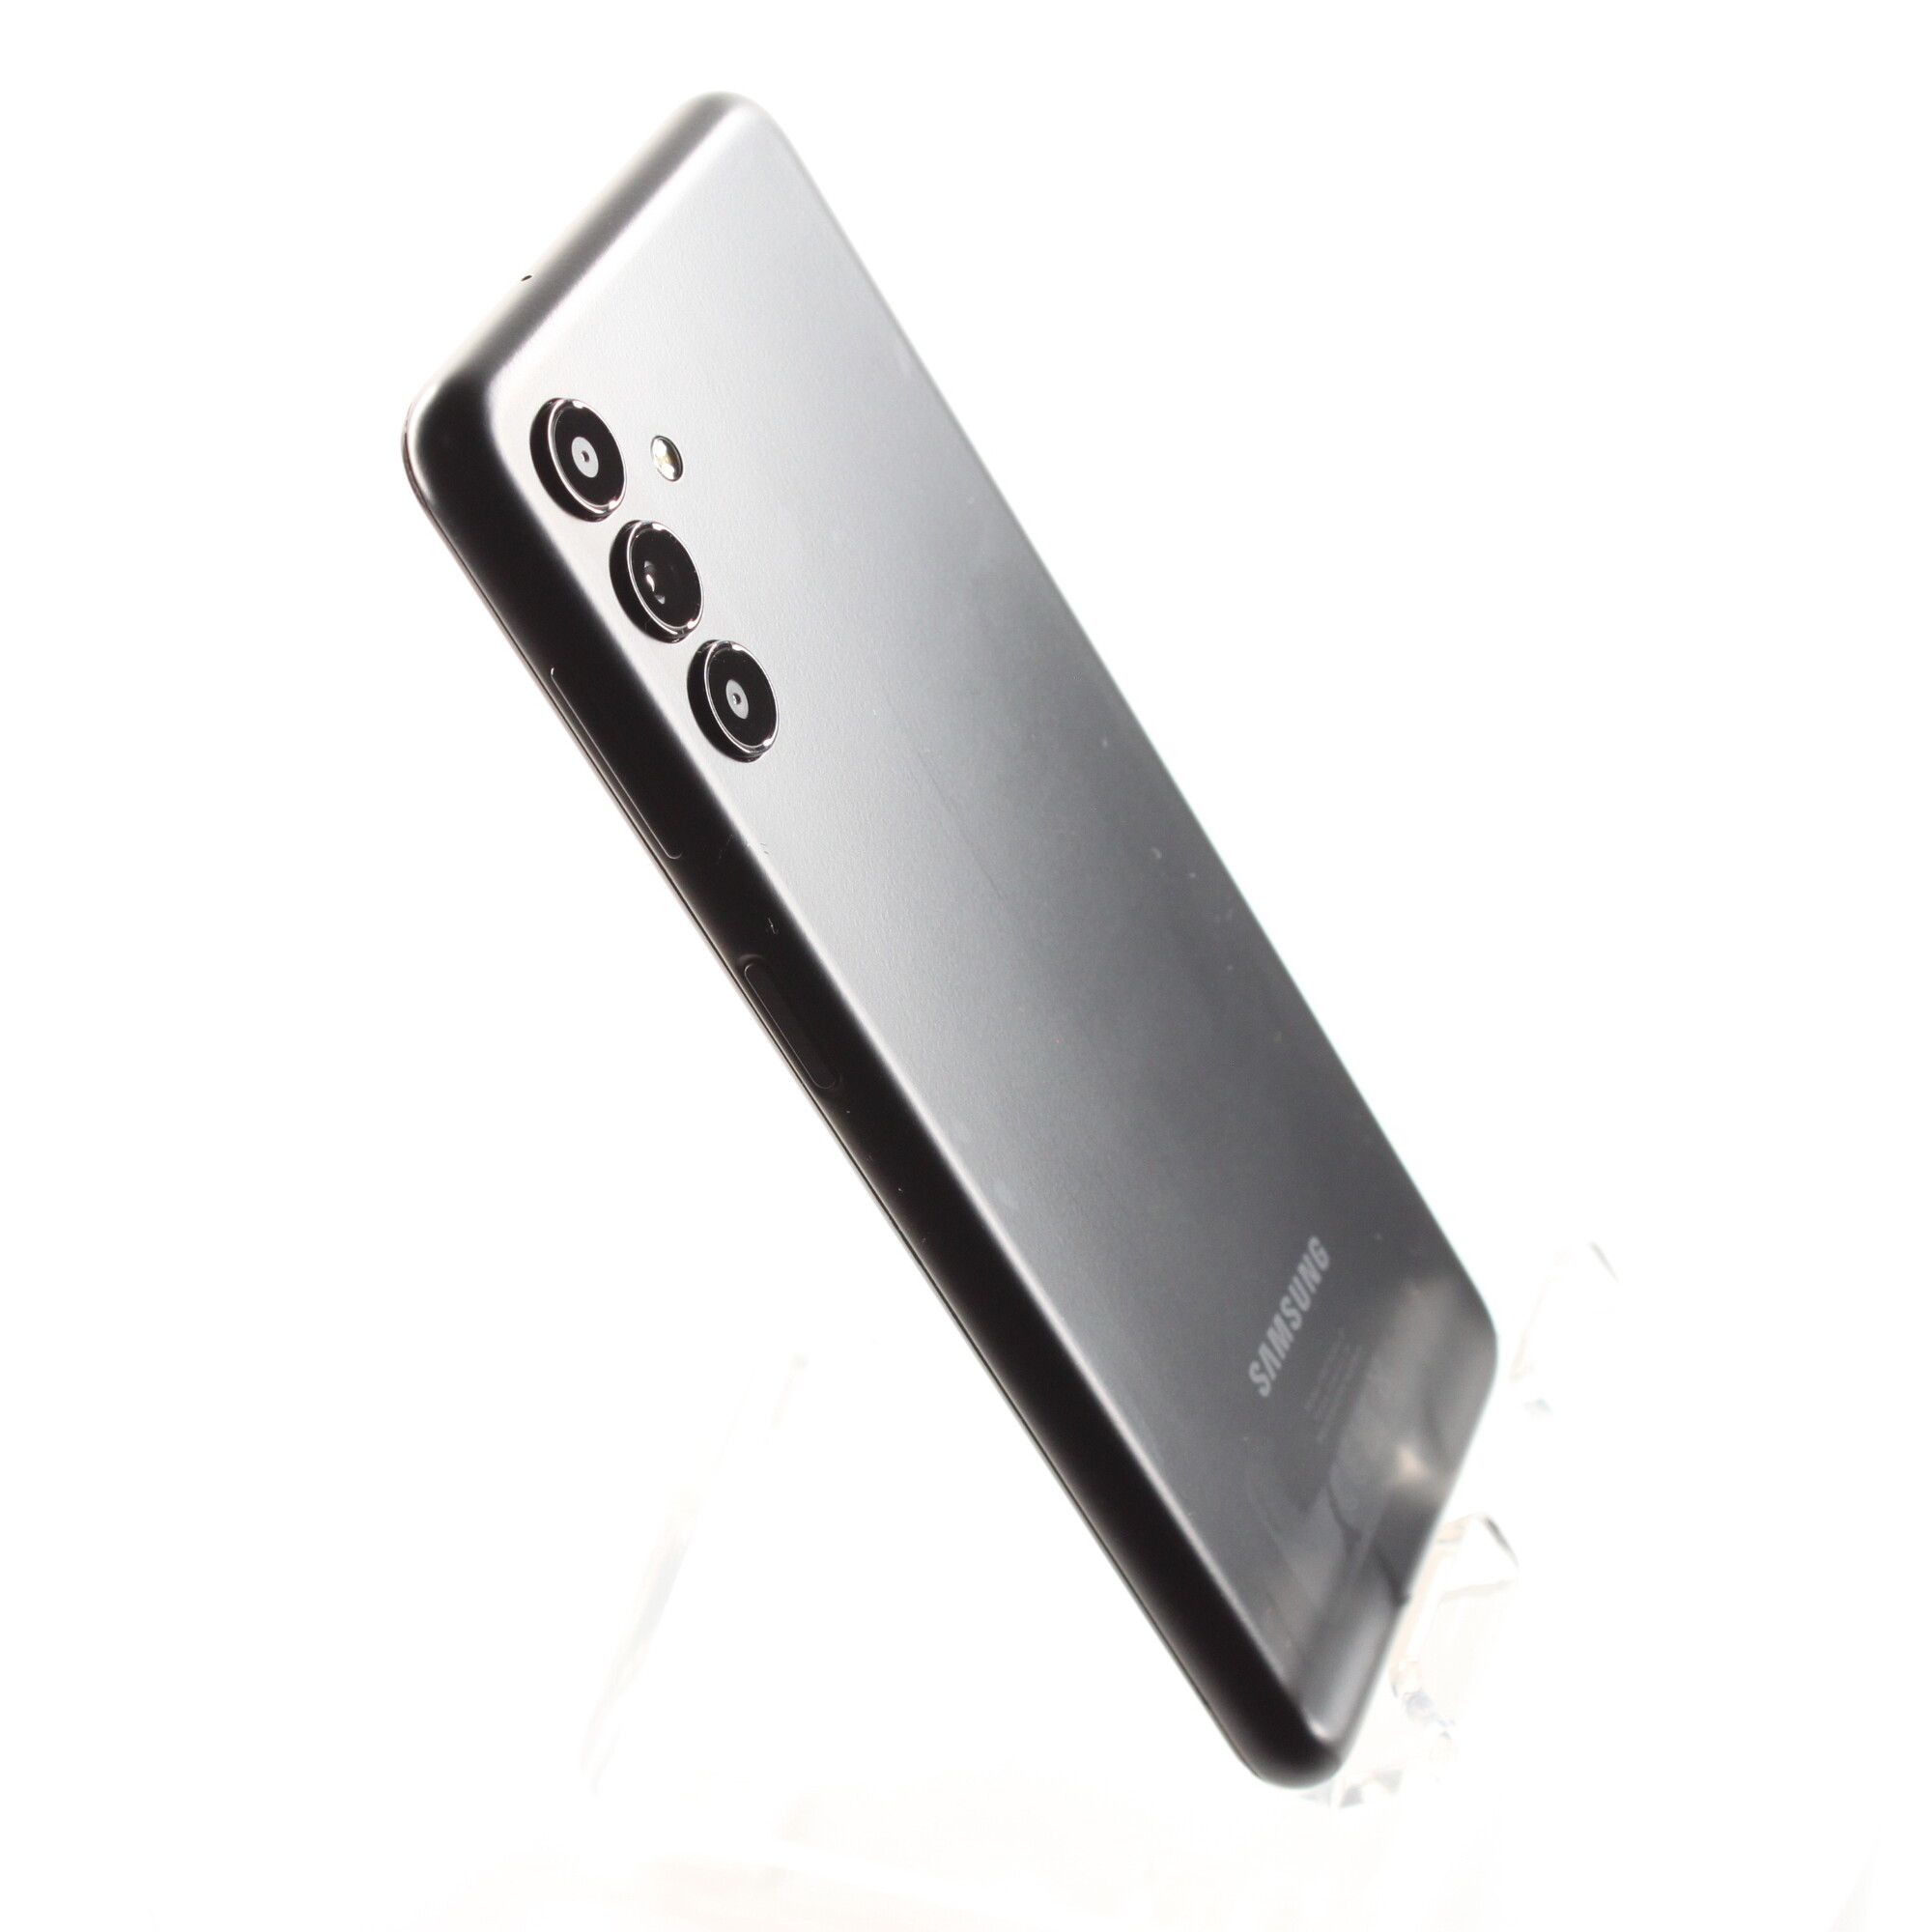 Samsung Galaxy A13 Noir · Reconditionné - Smartphone reconditionné - LDLC